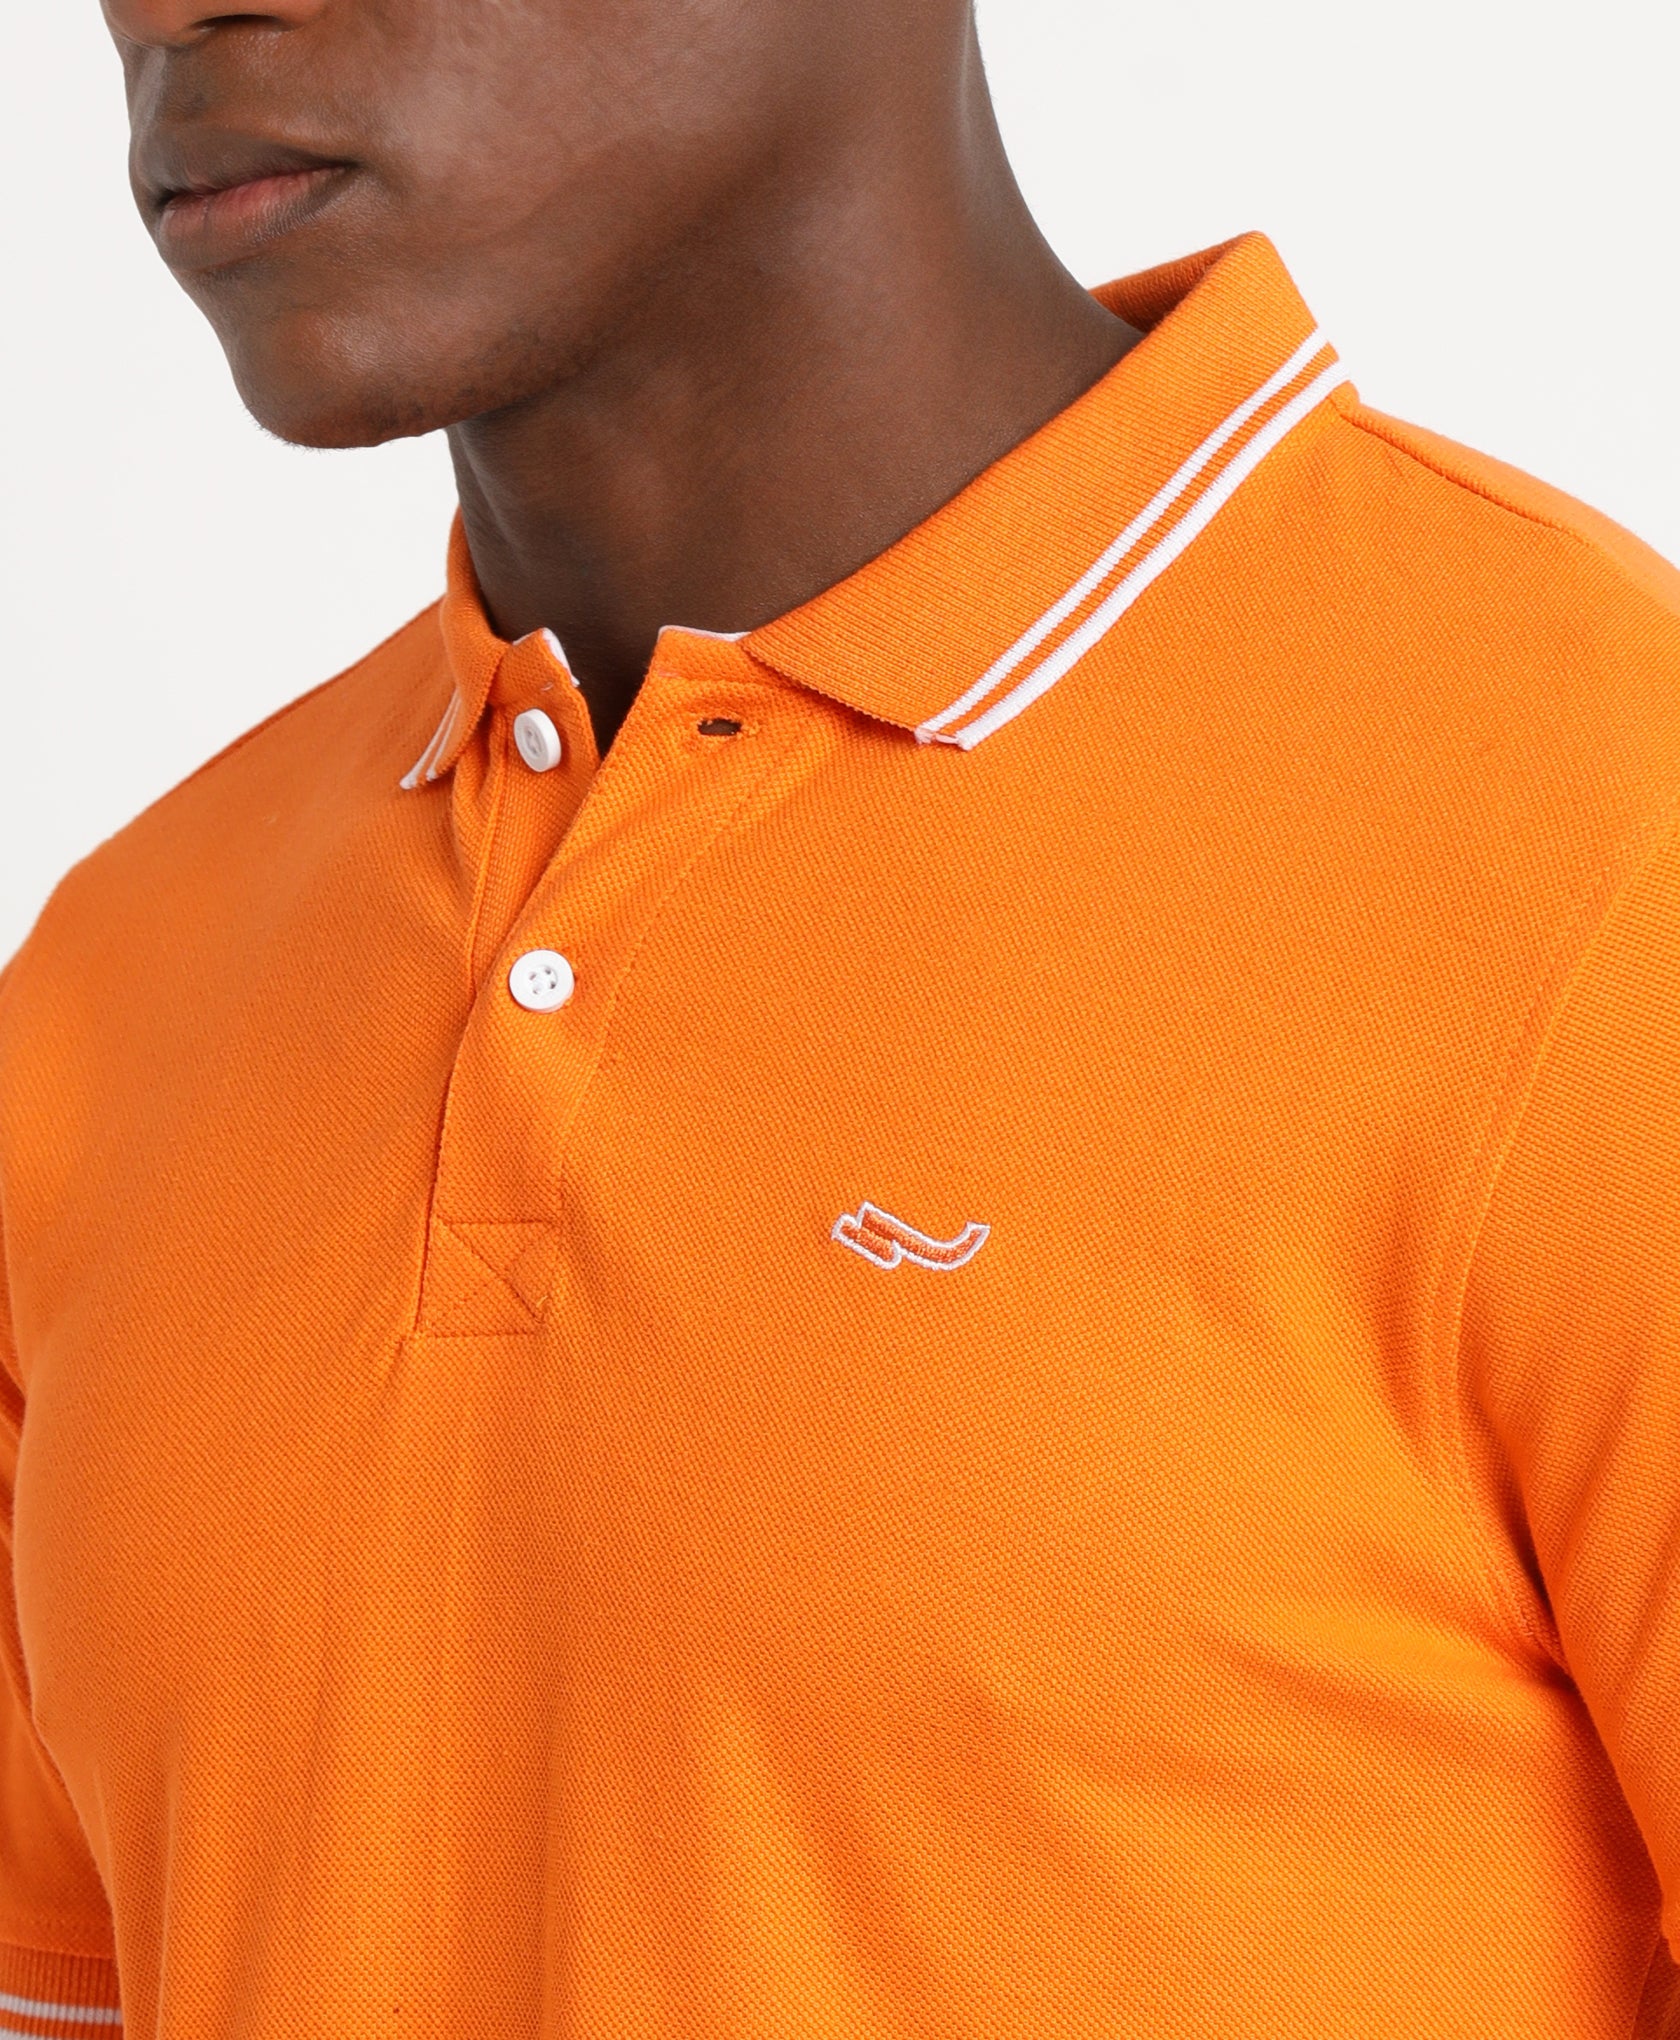 Orange Polo T-Shirt for Men 